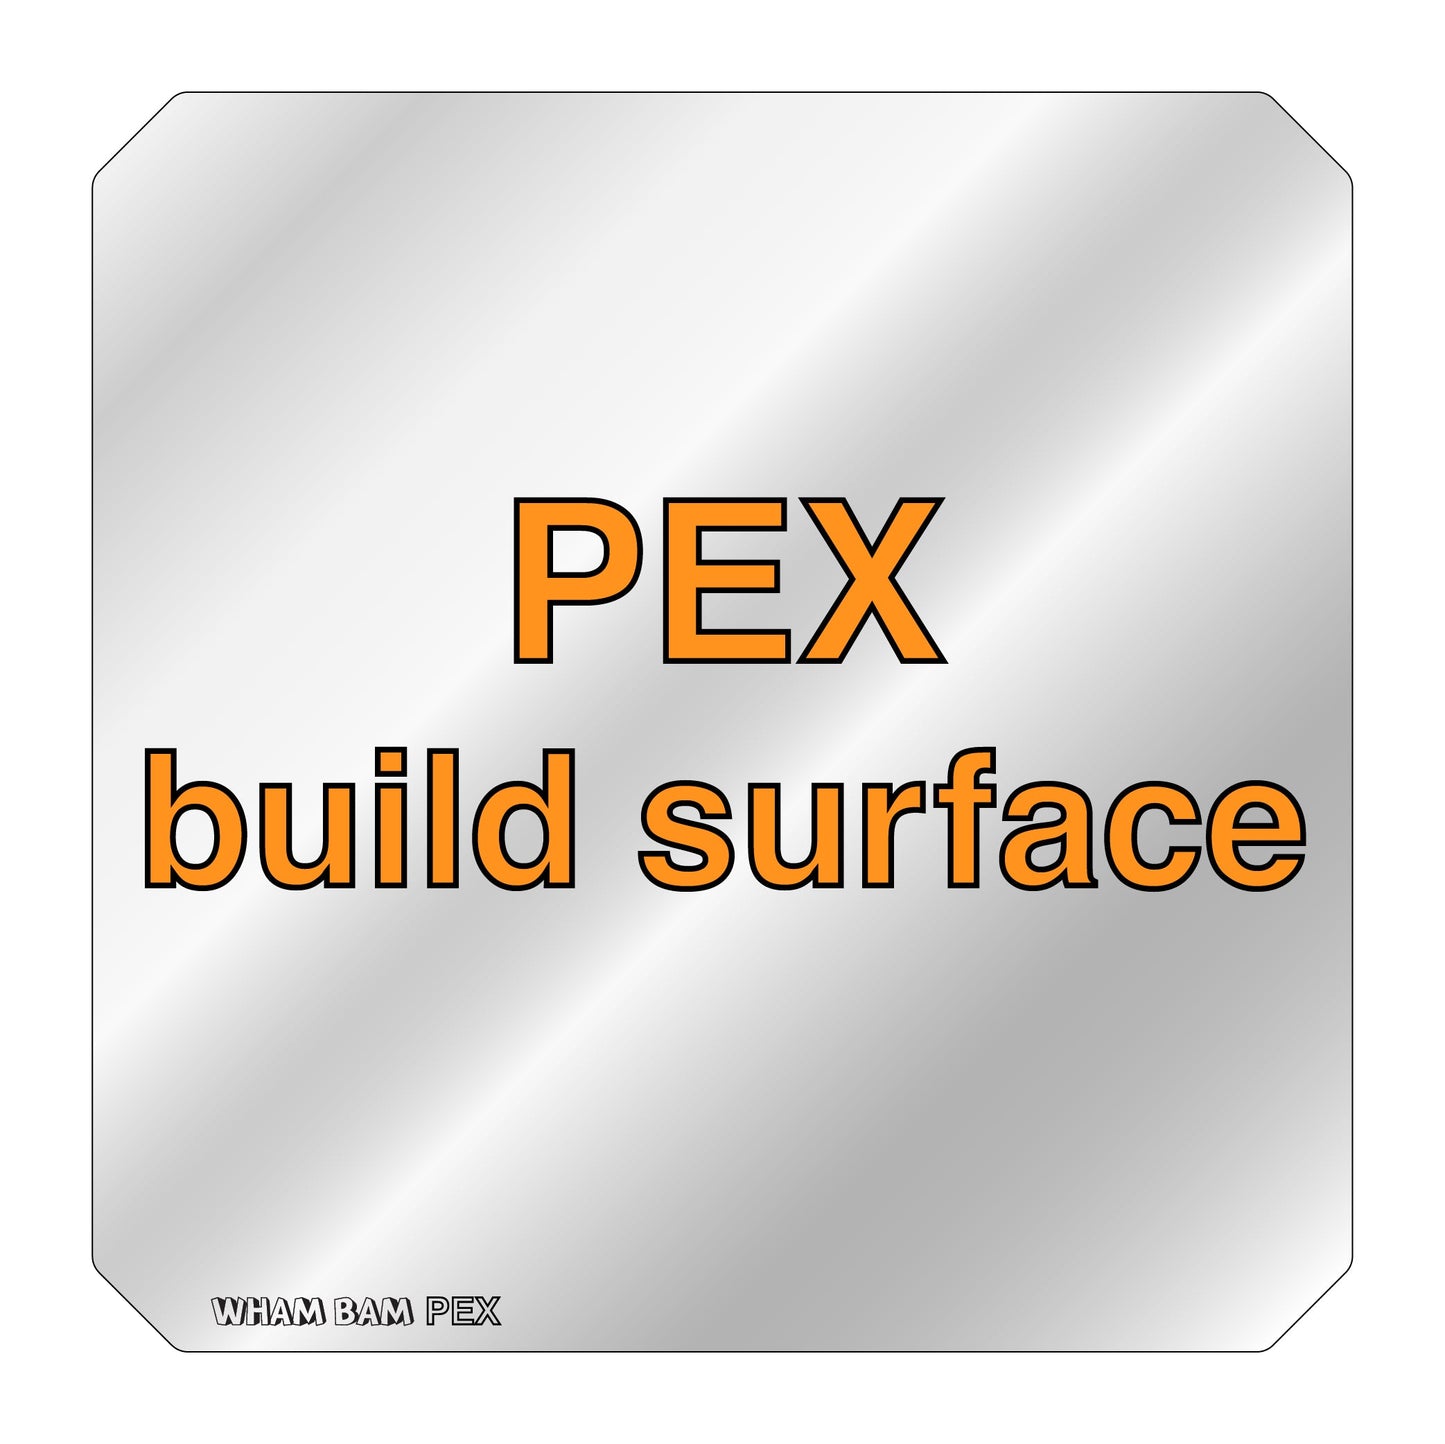 PEX Build Surface - 220 x 220 - Anet A8,  MonoPrice Maker Select Plus, Robo R2